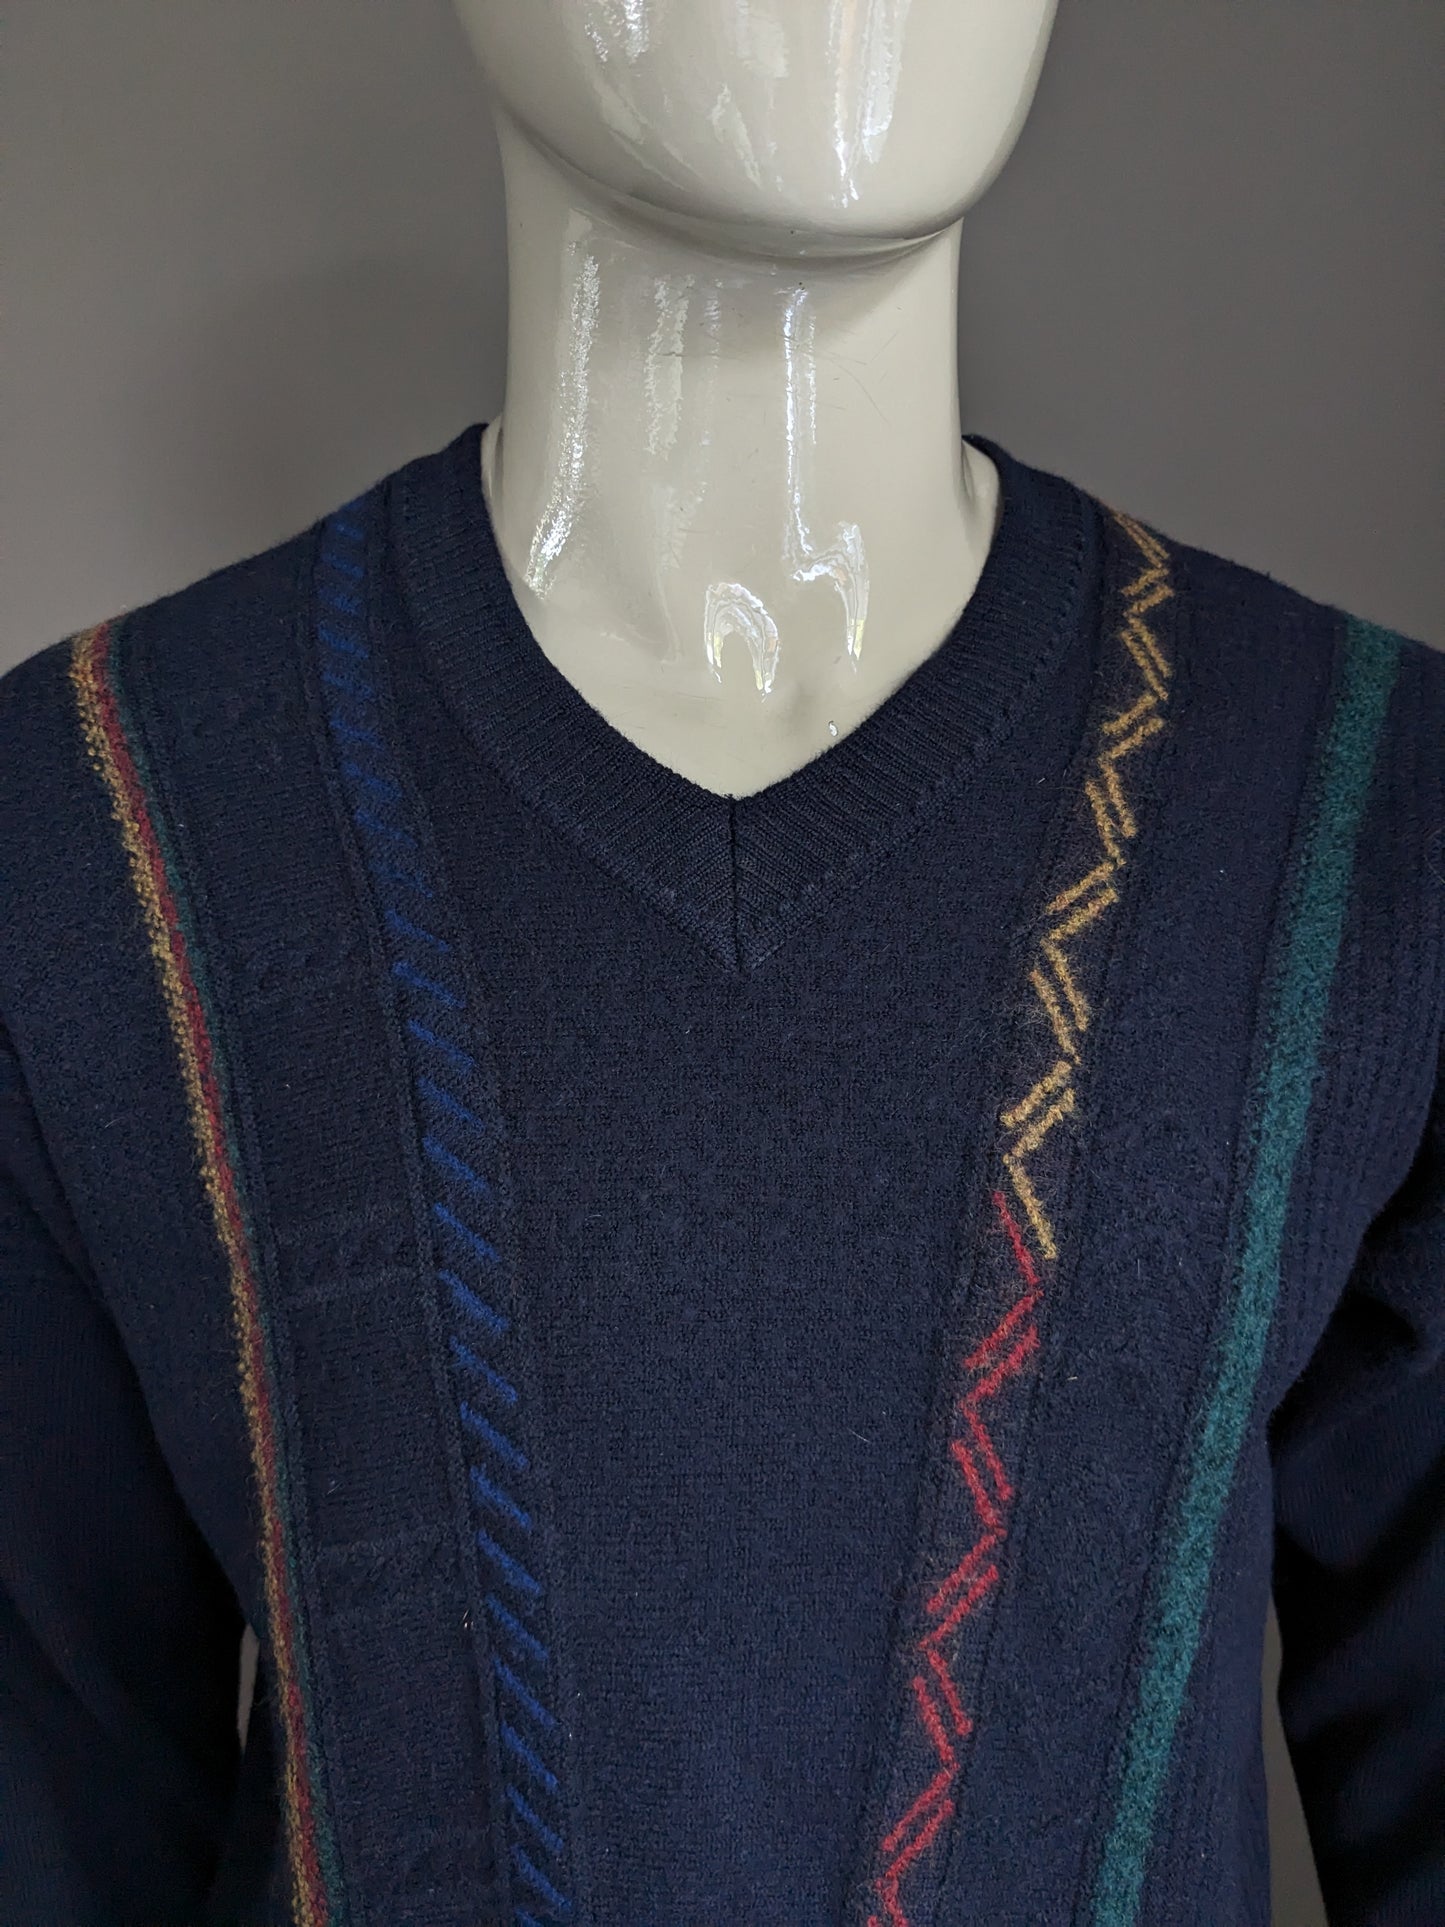 Maglione di lana maselli vintage con scollo a V. Blu scuro con motivo blu verde rosso giallo. Taglia L.